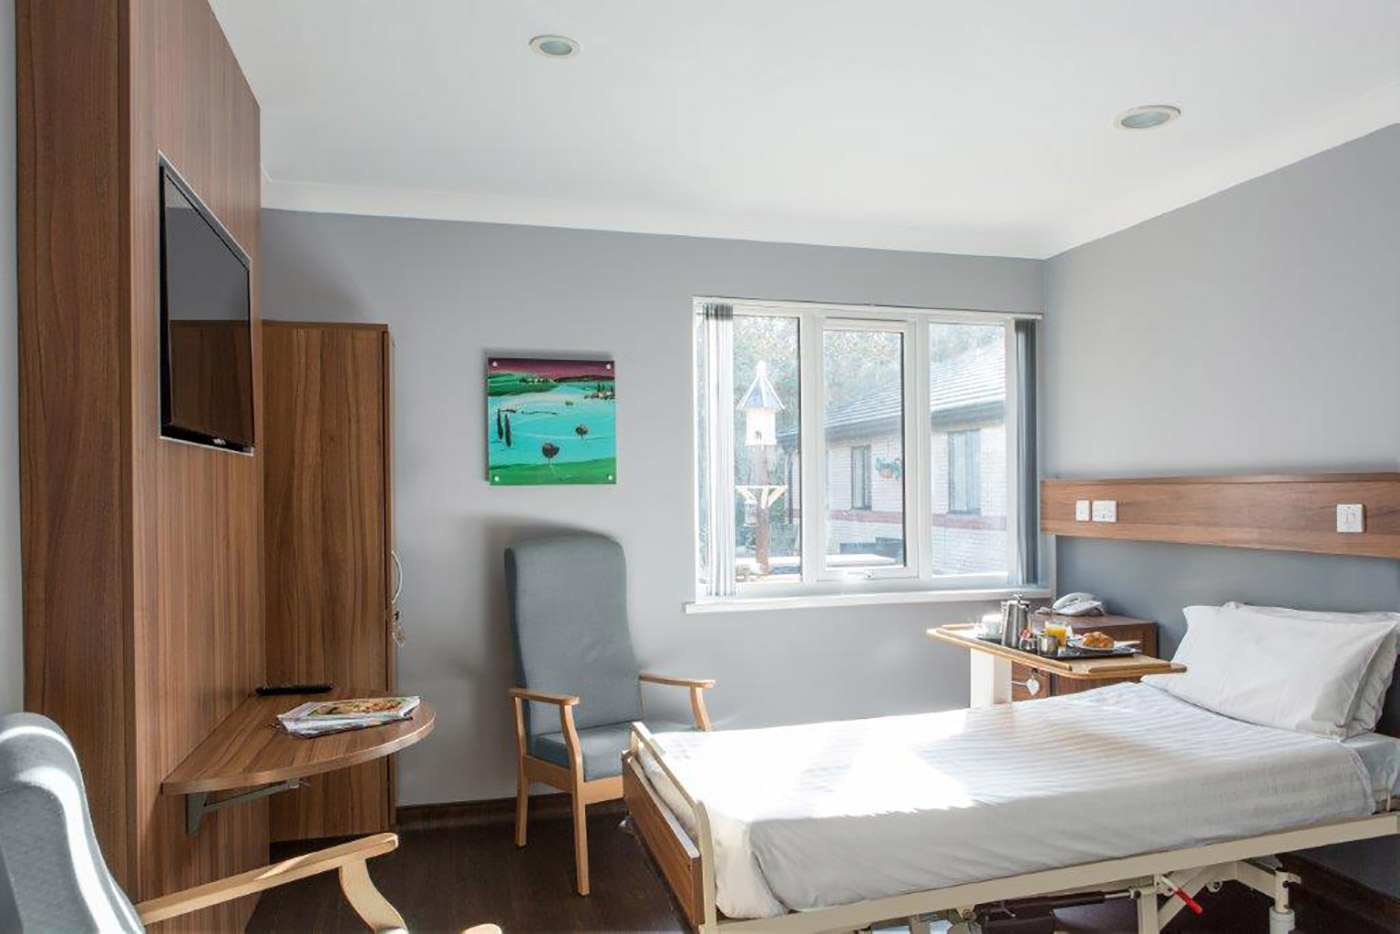 Patient's bedrooms furniture solution